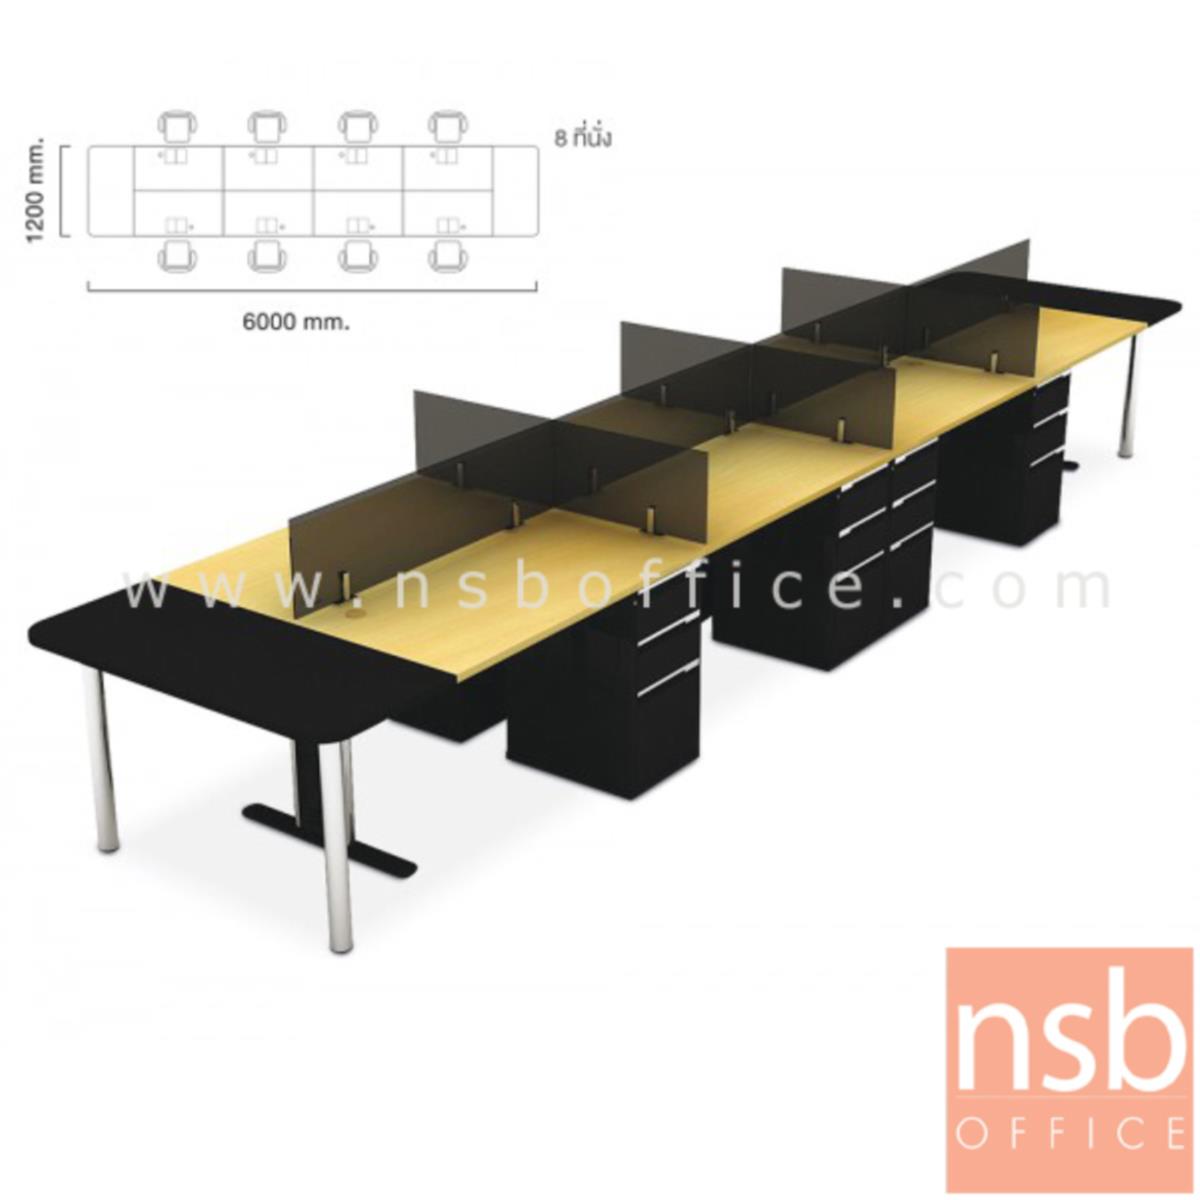 ชุดโต๊ะทำงานกลุ่ม 8 ที่นั่ง  รุ่น NSB-WS028G ขนาด 600W cm. พร้อมลิ้นชักเหล็กอย่างดี